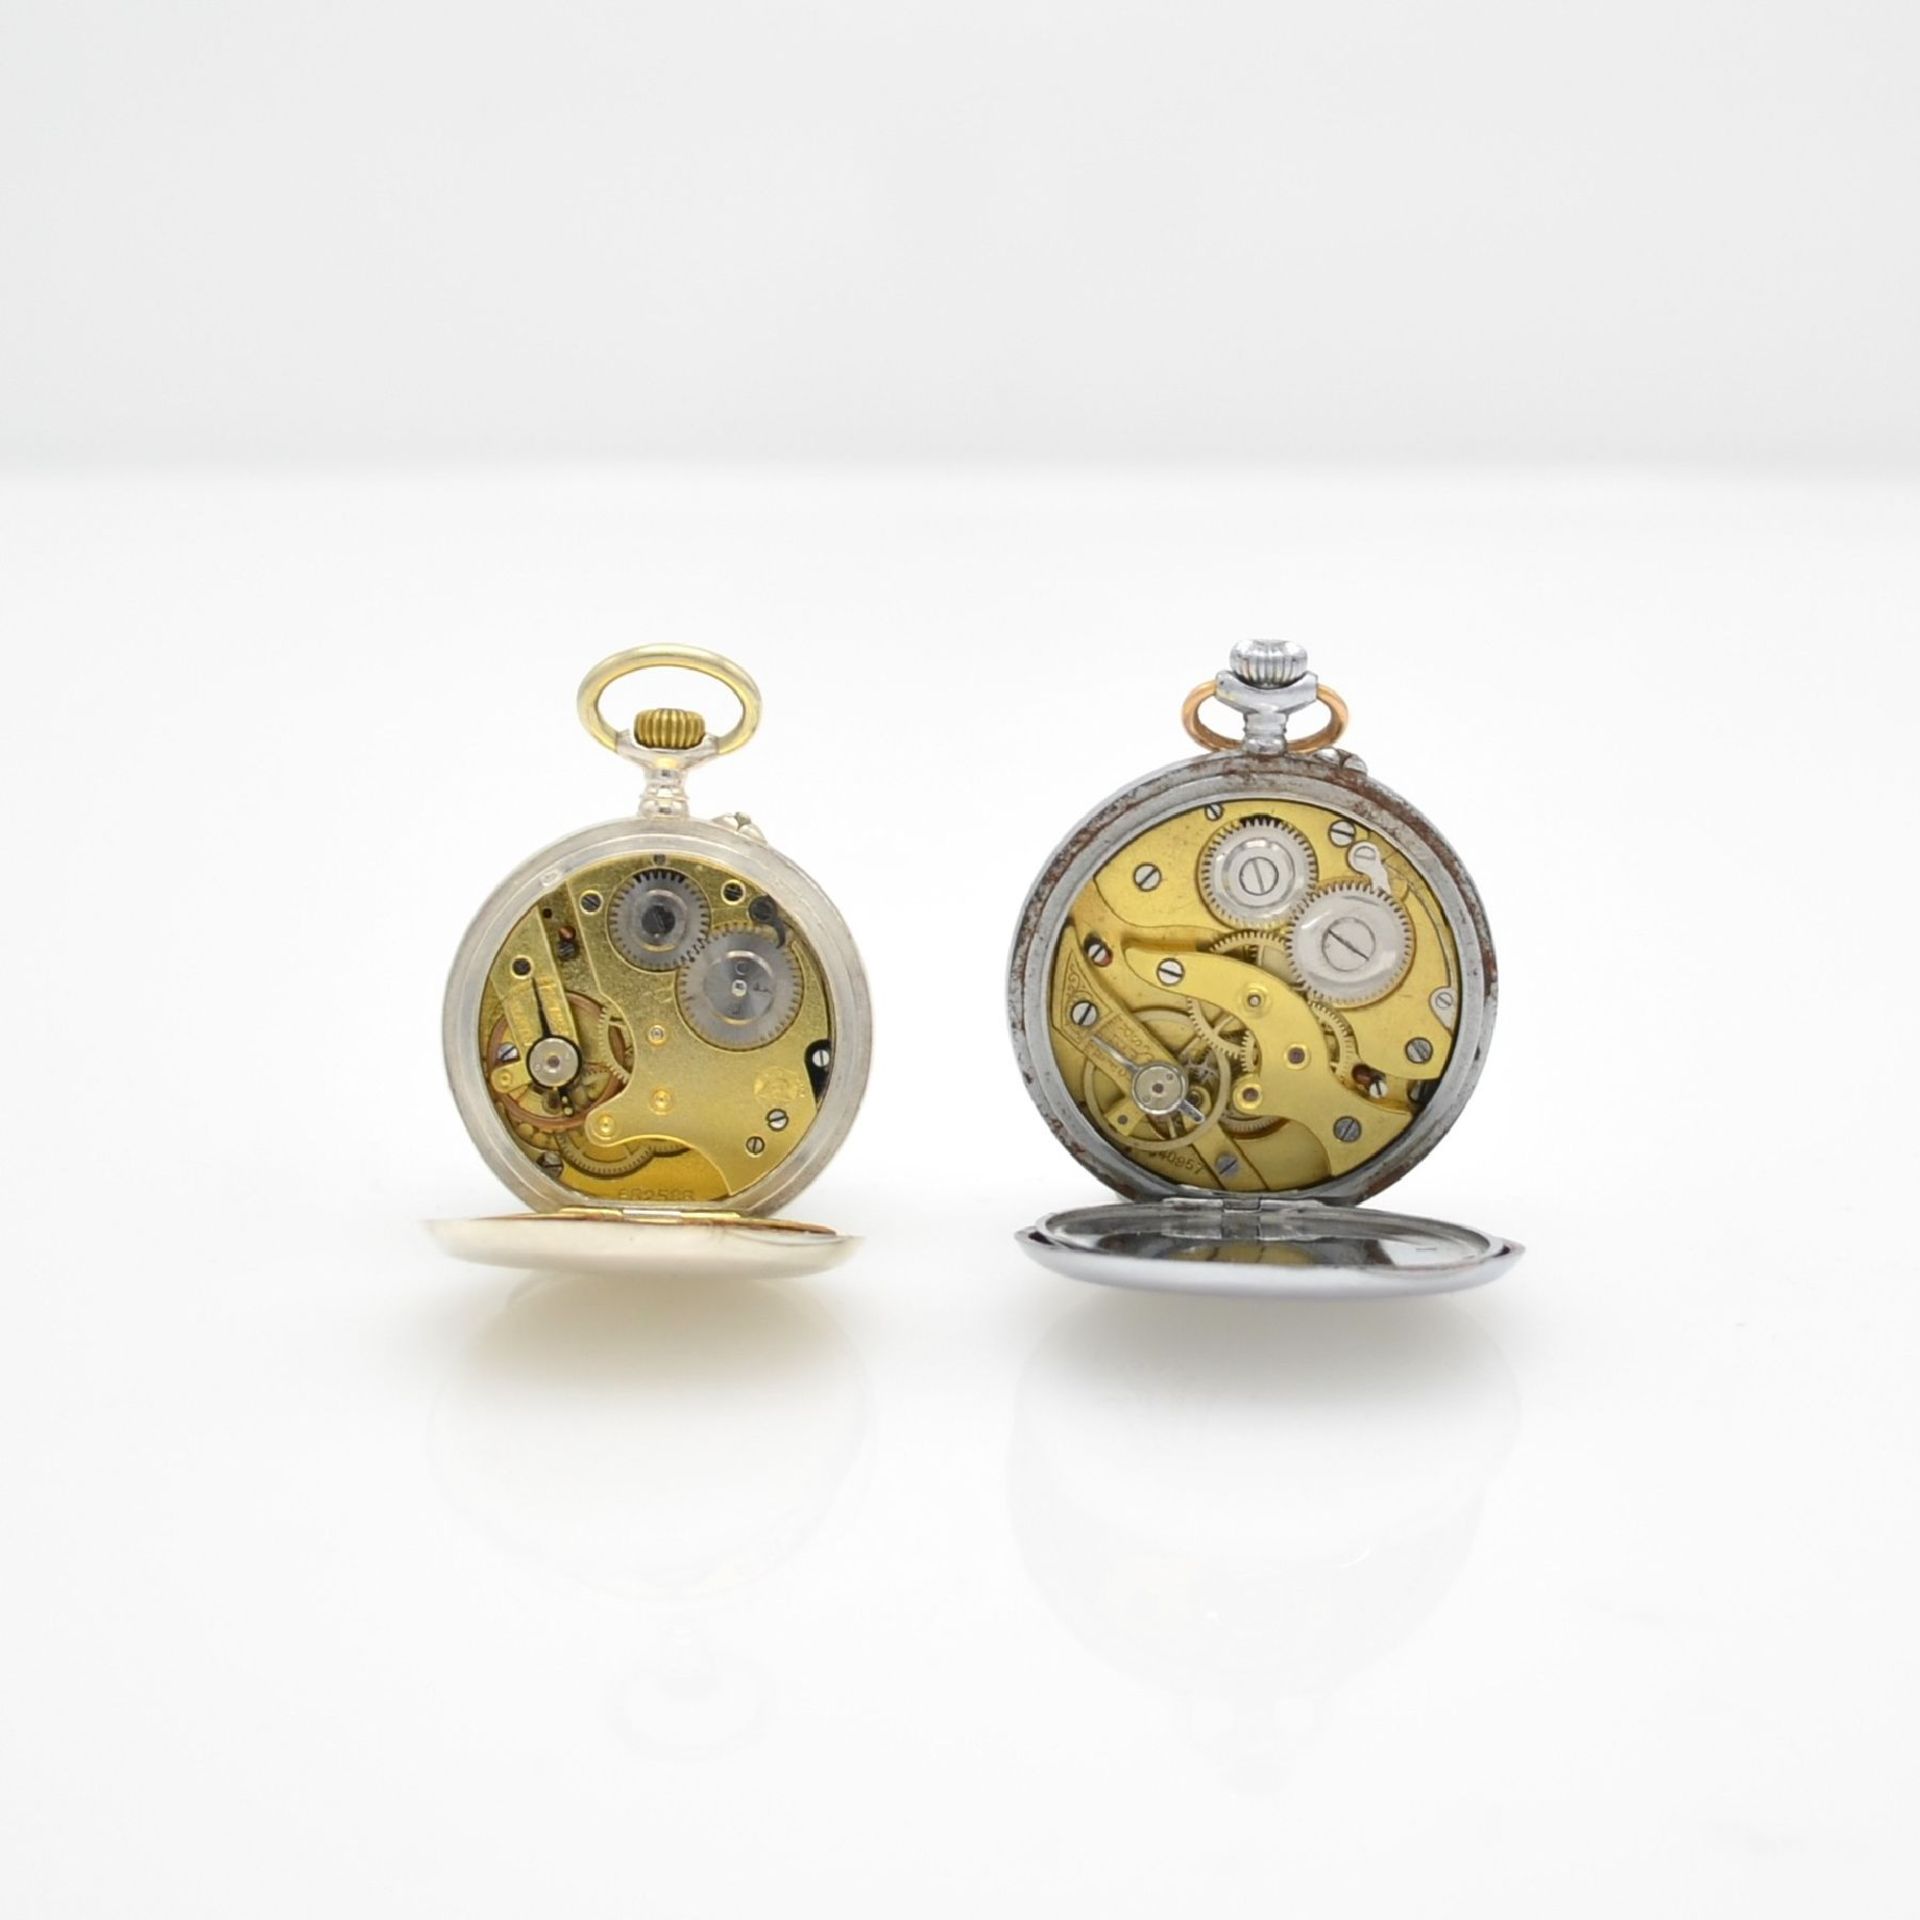 ETERNA 12 pocket watches as well as 4 gilt chains, Switzerland around 1900 till 1930, 10 silver - Bild 12 aus 14